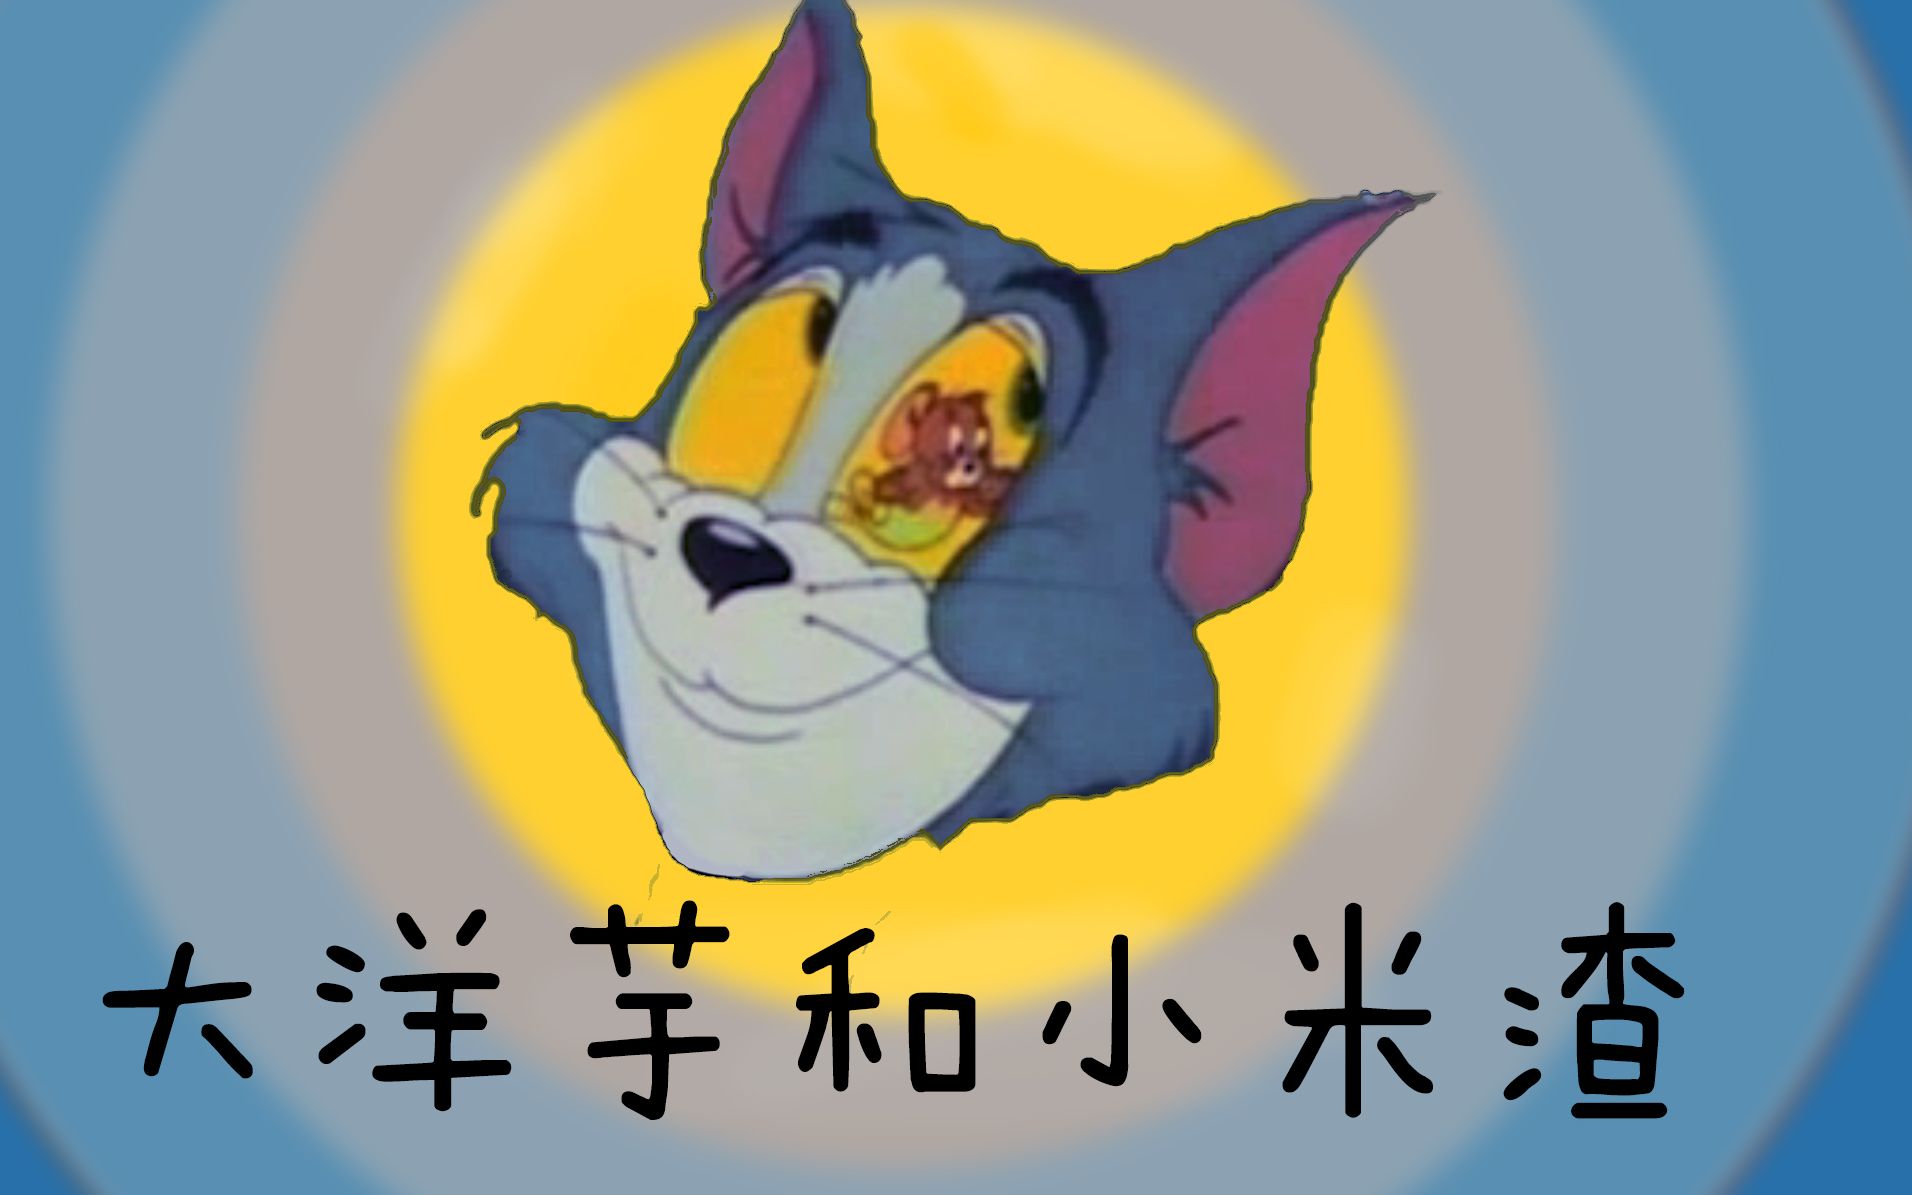 猫和老鼠云南话版 大洋芋和小米渣 字幕